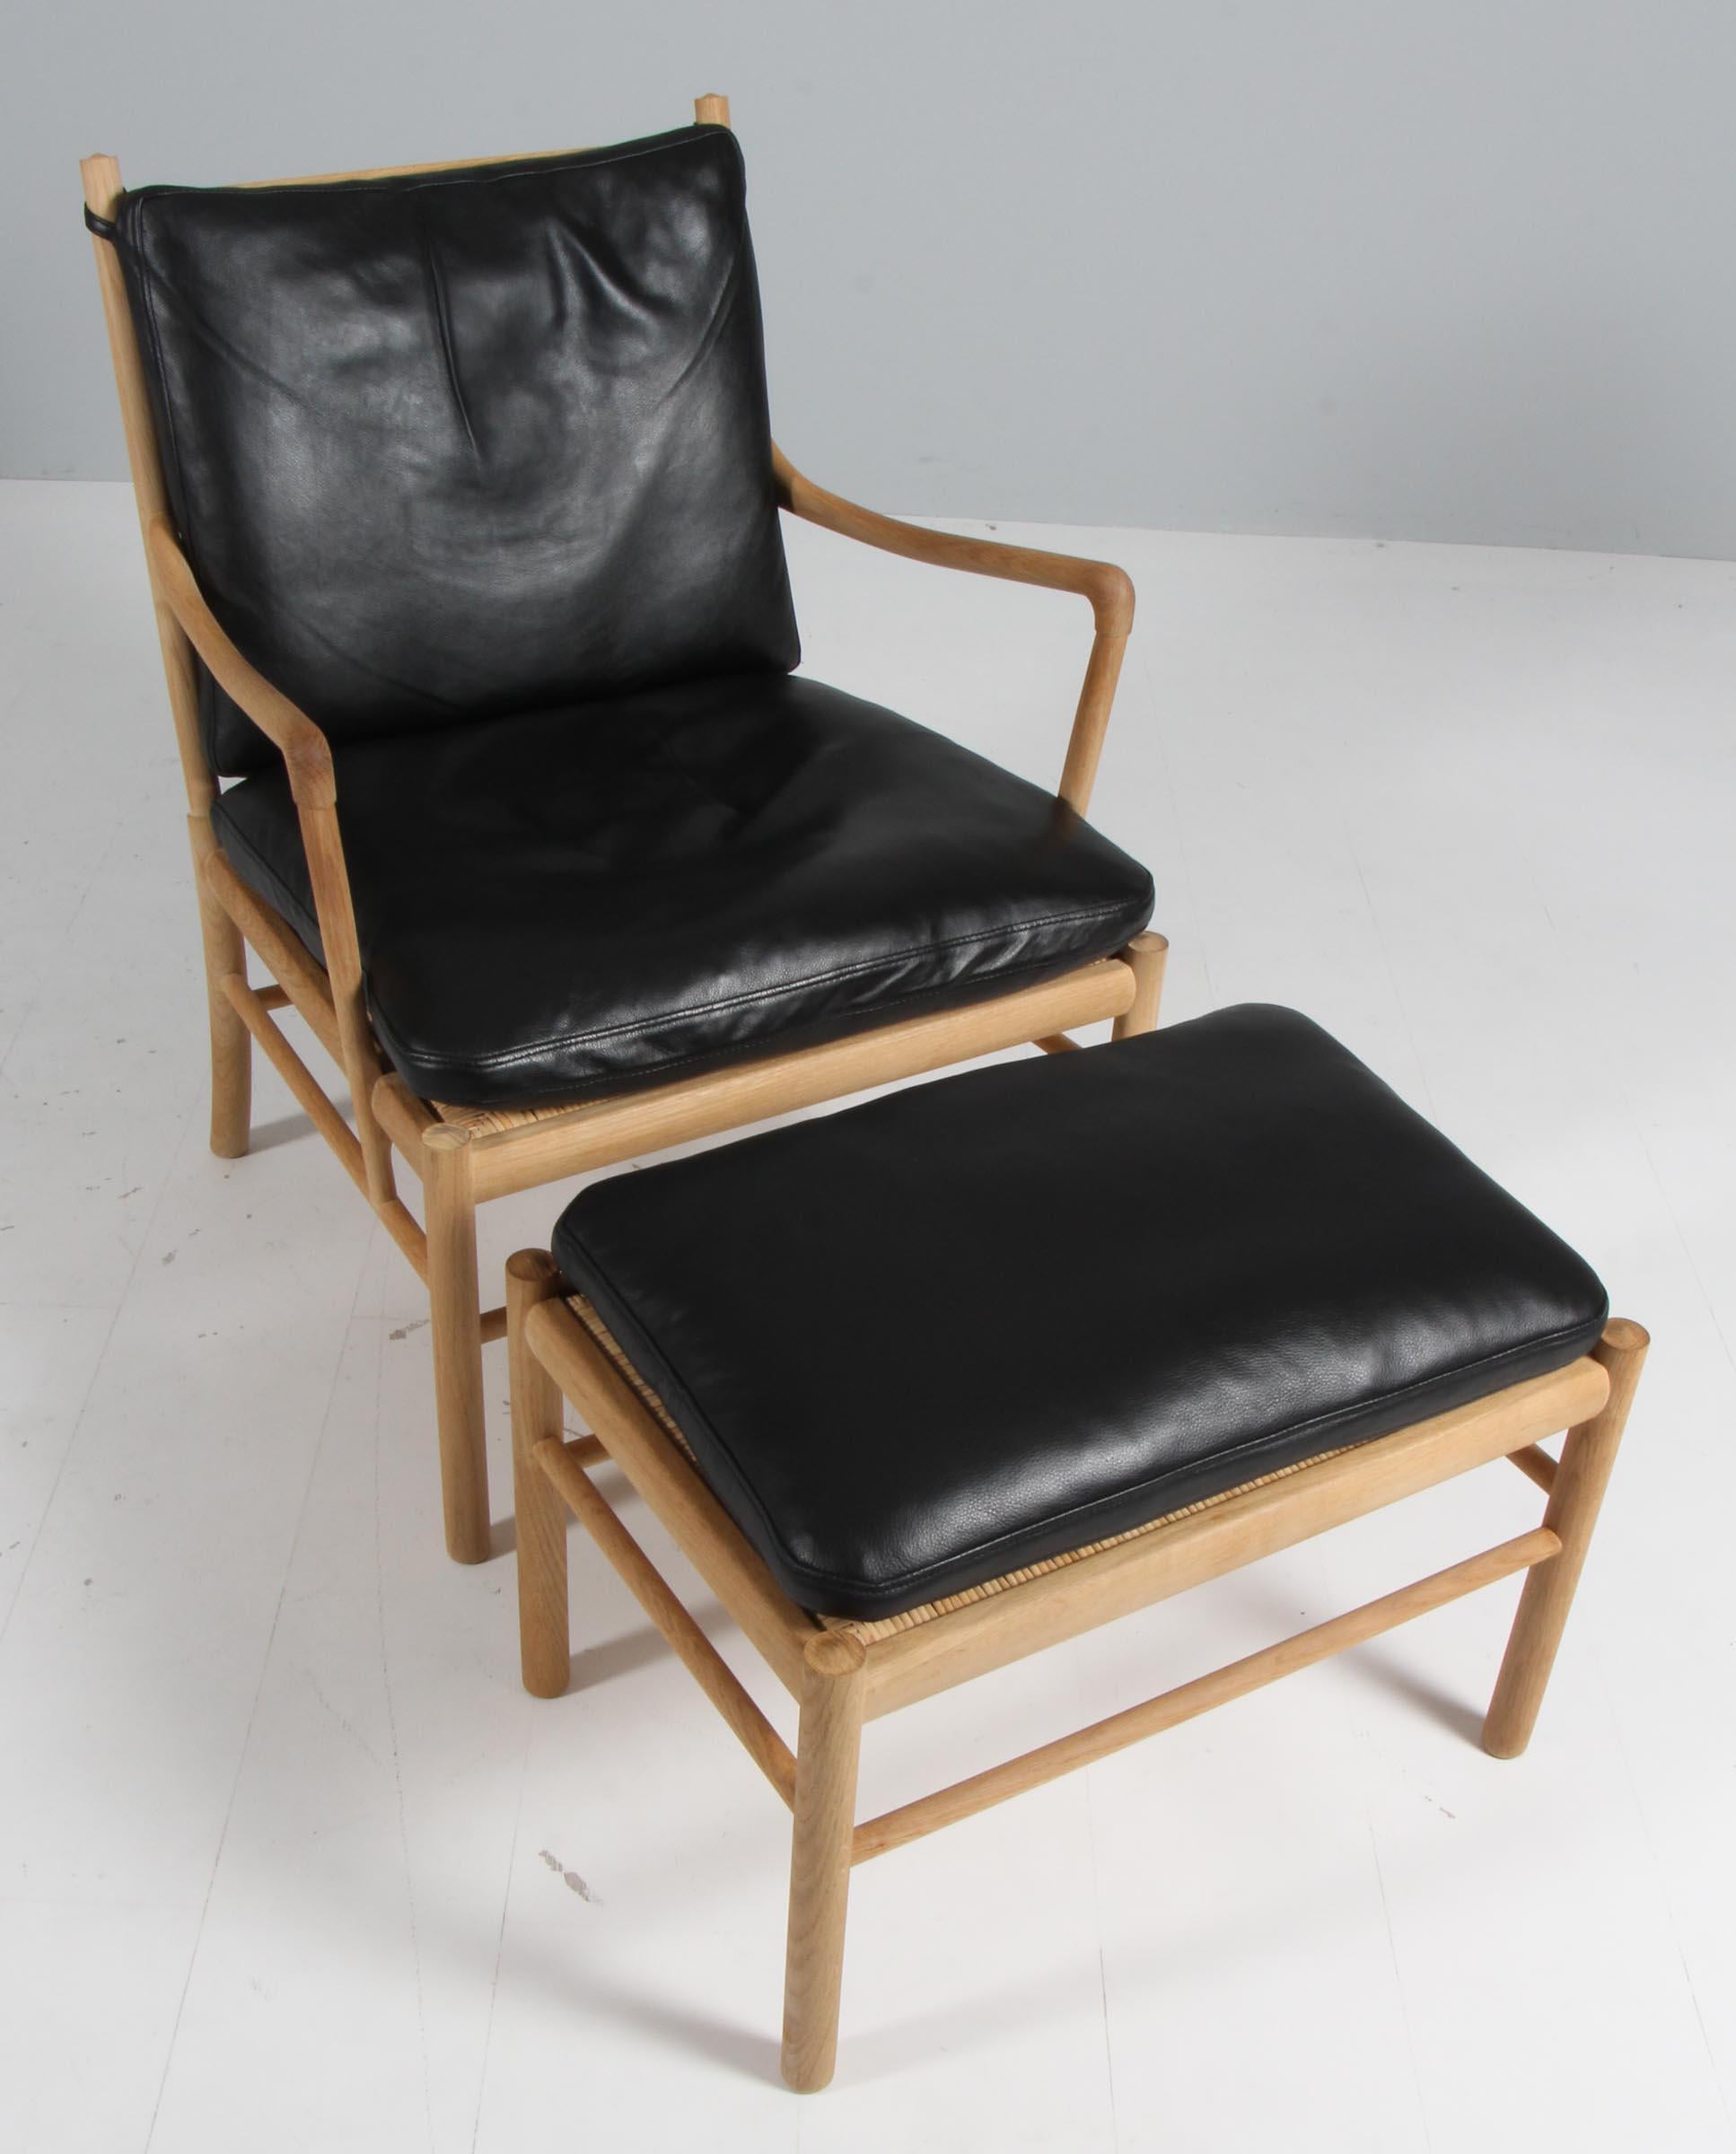 La chaise longue et l'ottoman de Ole Wanscher sont recouverts d'un cuir aniline de première qualité.

Fabriqué en chêne. 

Modèle OW 149 chaise coloniale, fabriquée par Carl Hansen & Søn.